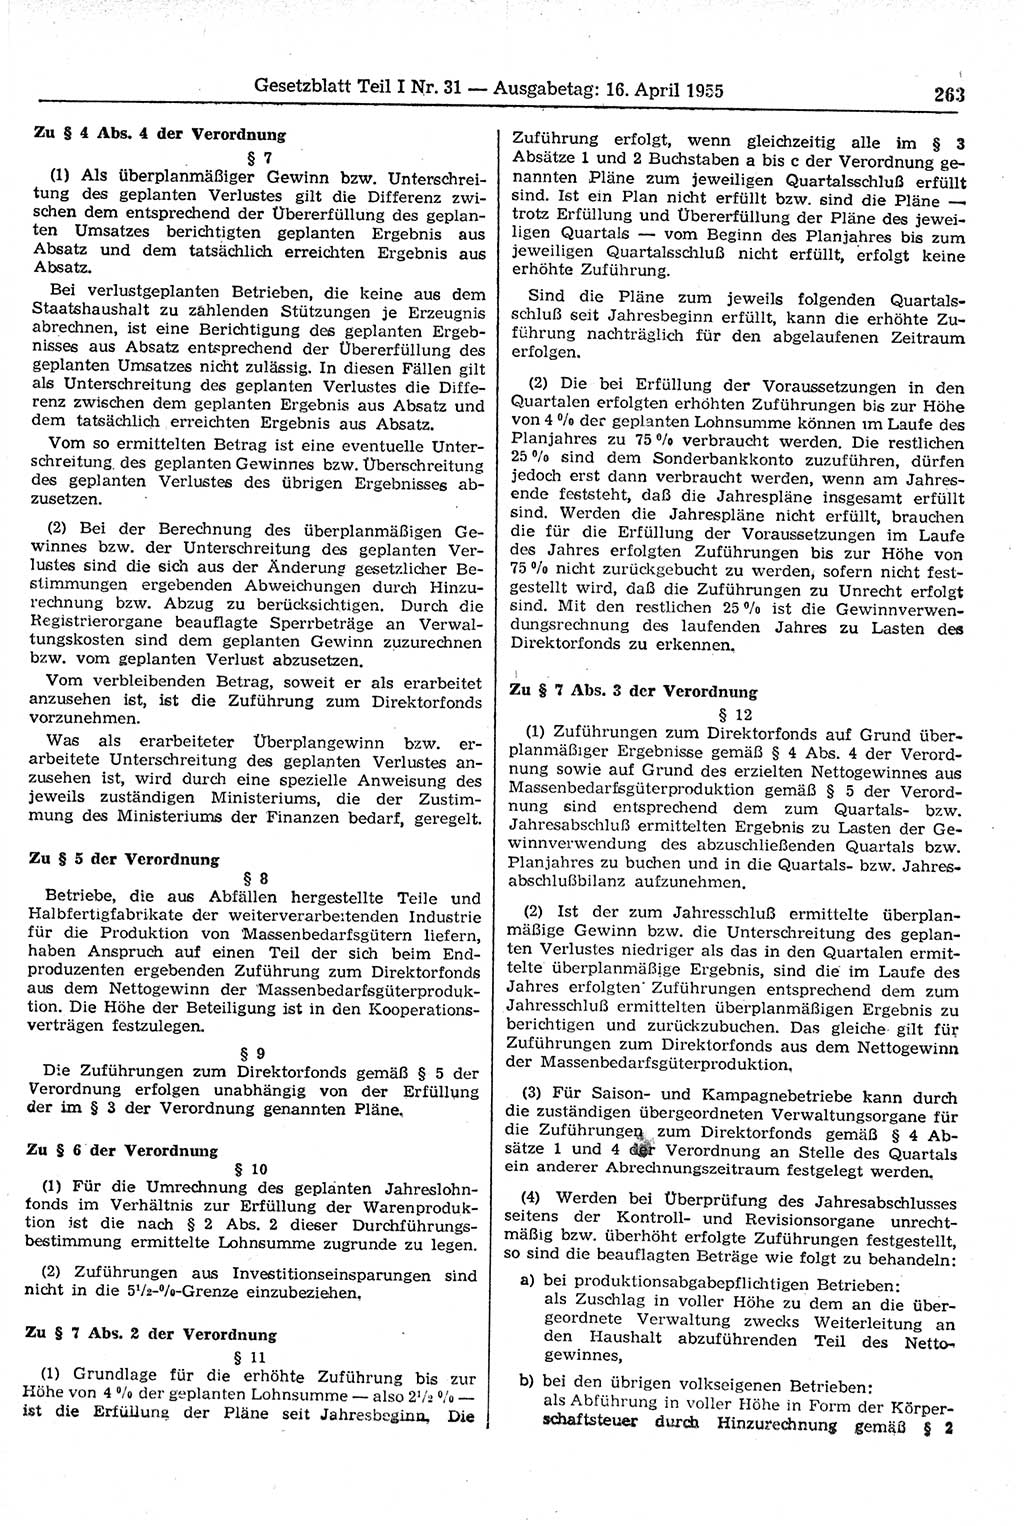 Gesetzblatt (GBl.) der Deutschen Demokratischen Republik (DDR) Teil Ⅰ 1955, Seite 263 (GBl. DDR Ⅰ 1955, S. 263)